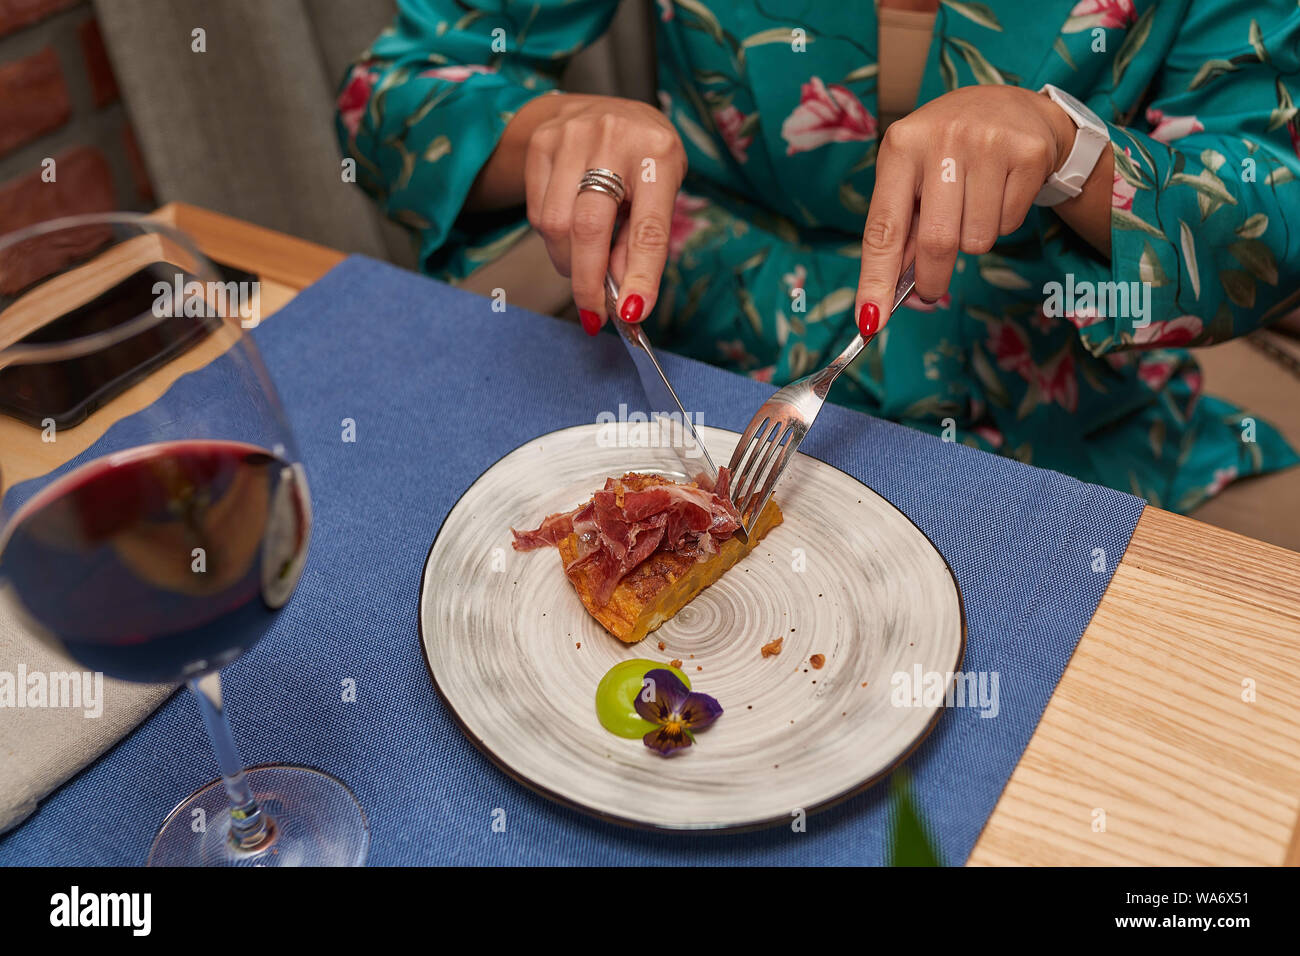 Donna tagli piatti secondo le regole del galateo in un abito verde close-up Foto Stock